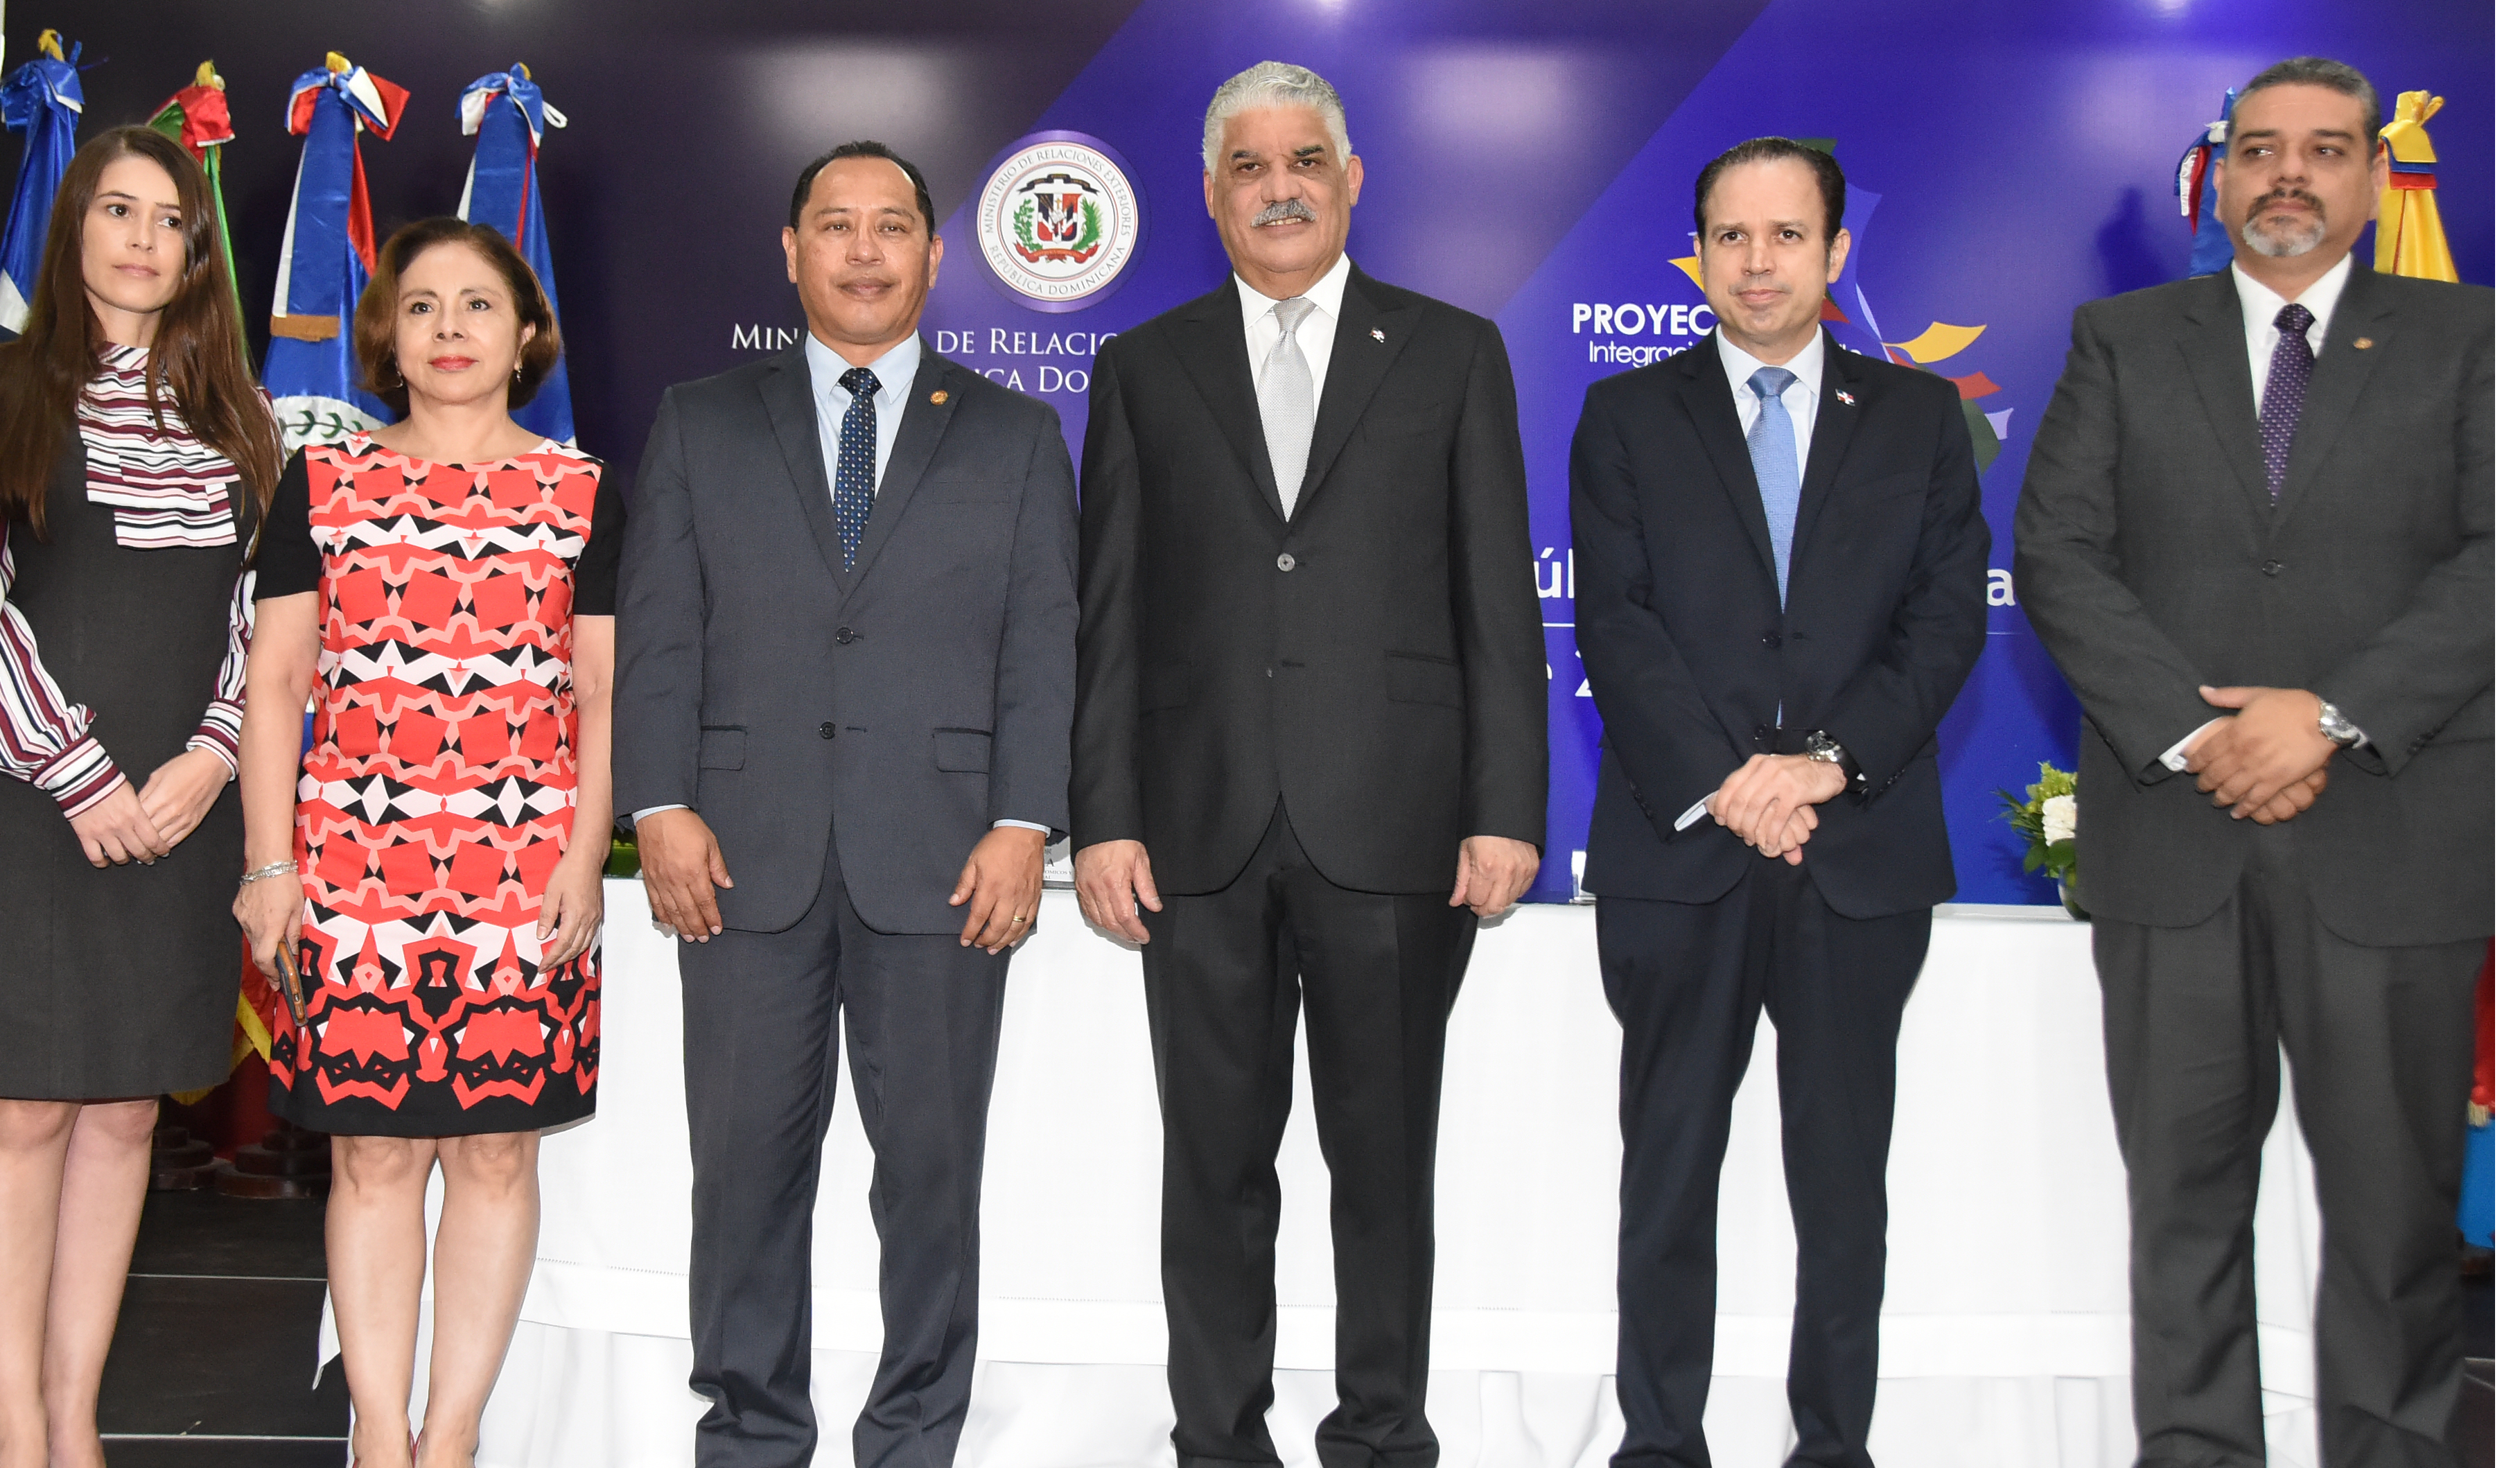 Canciller Miguel Vargas anuncia RD asume Presidencia pro tempore del Proyecto Mesoamérica